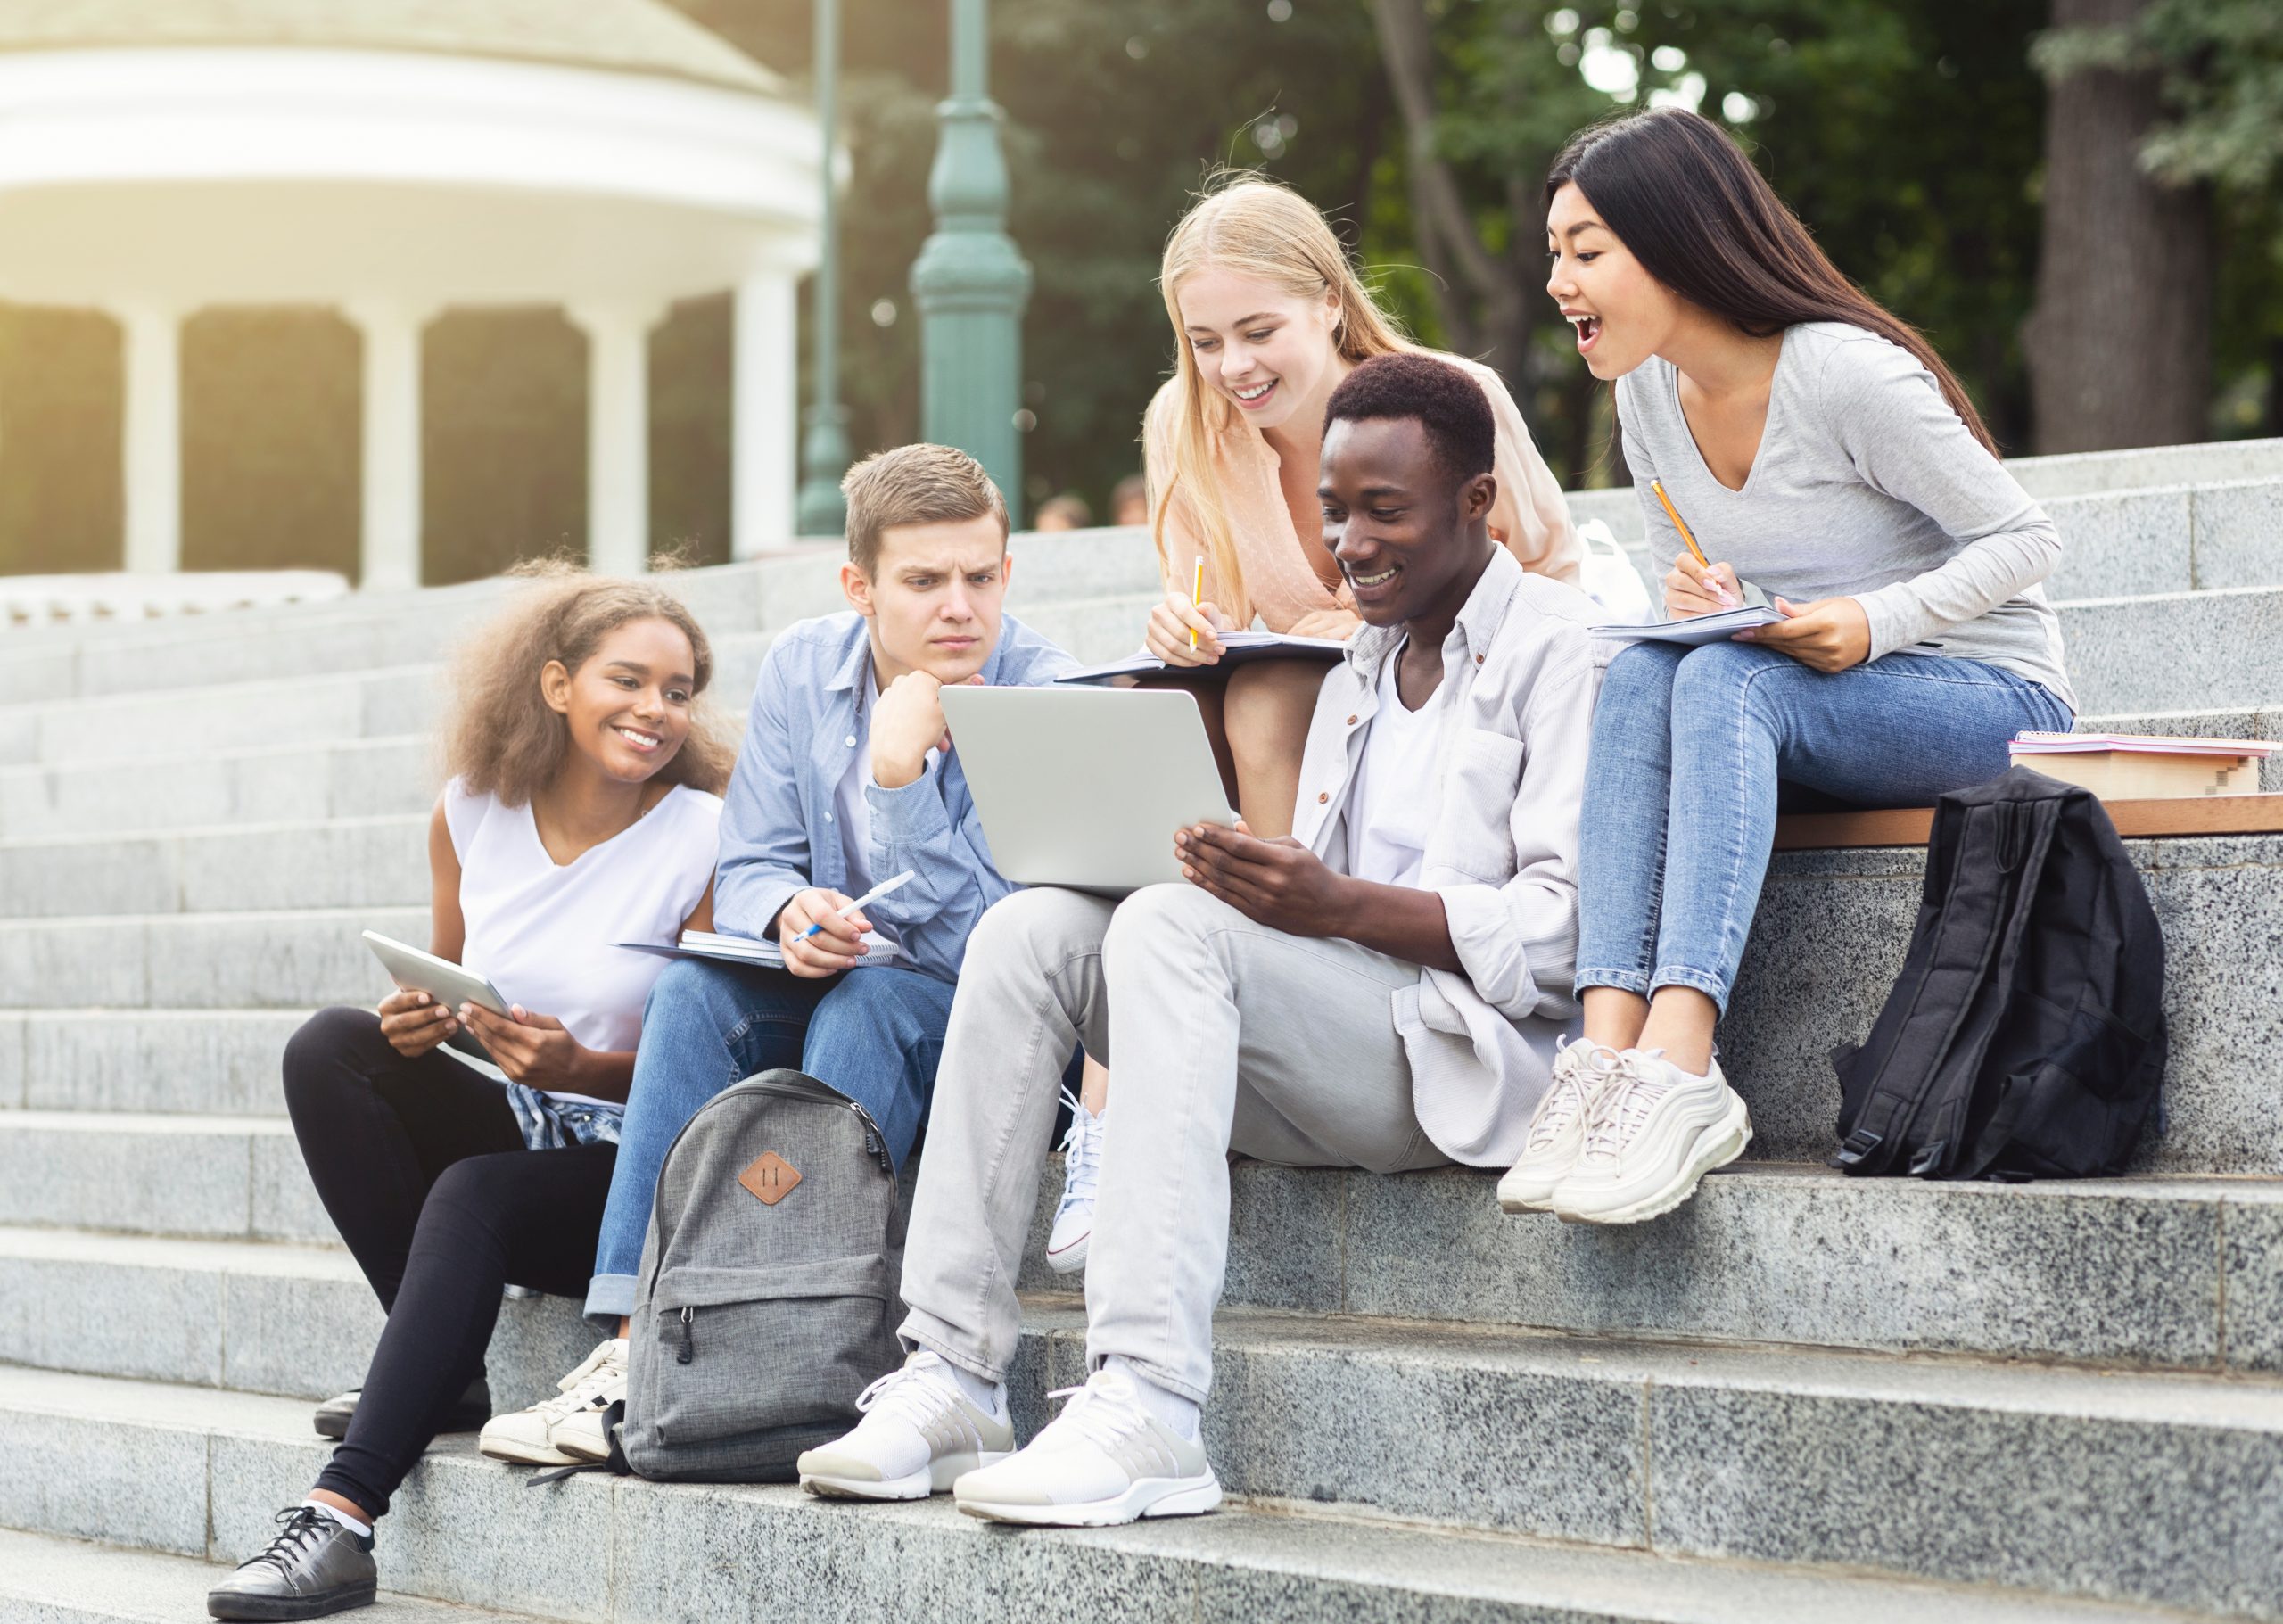 Internationale Studierende, die auf einer Treppe im Park sitzen. Sie schauen gemeinsam auf einen Laptop und lachen dabei.